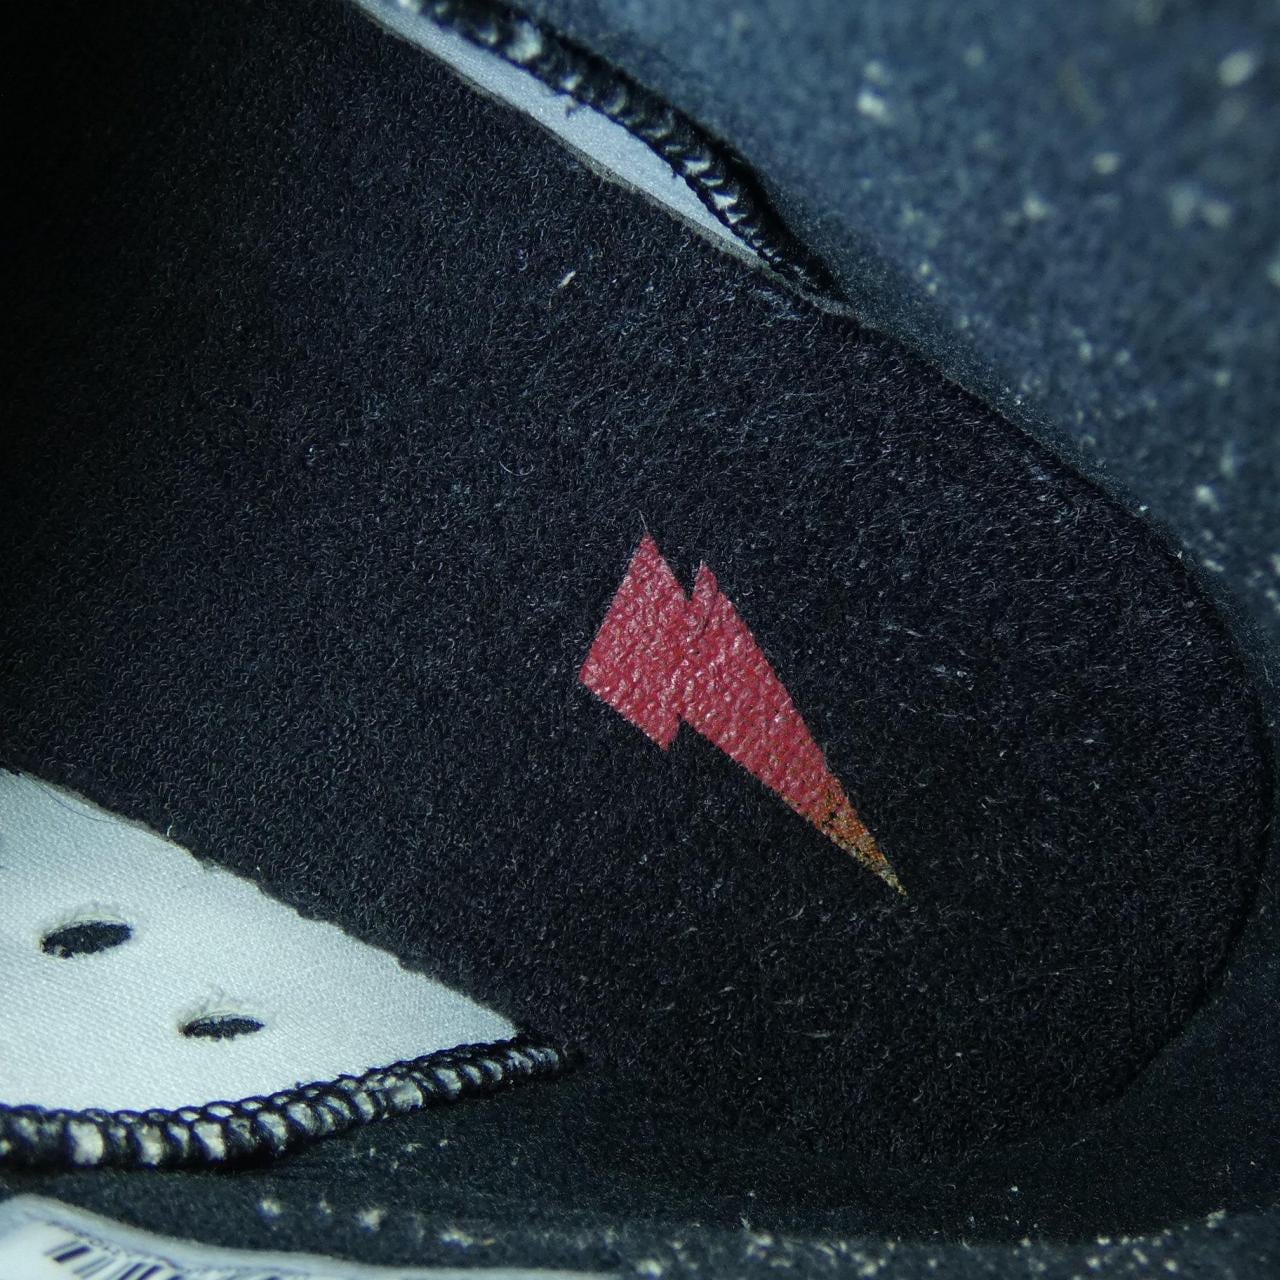 Nike Jordan NIKE JORDAN sneakers